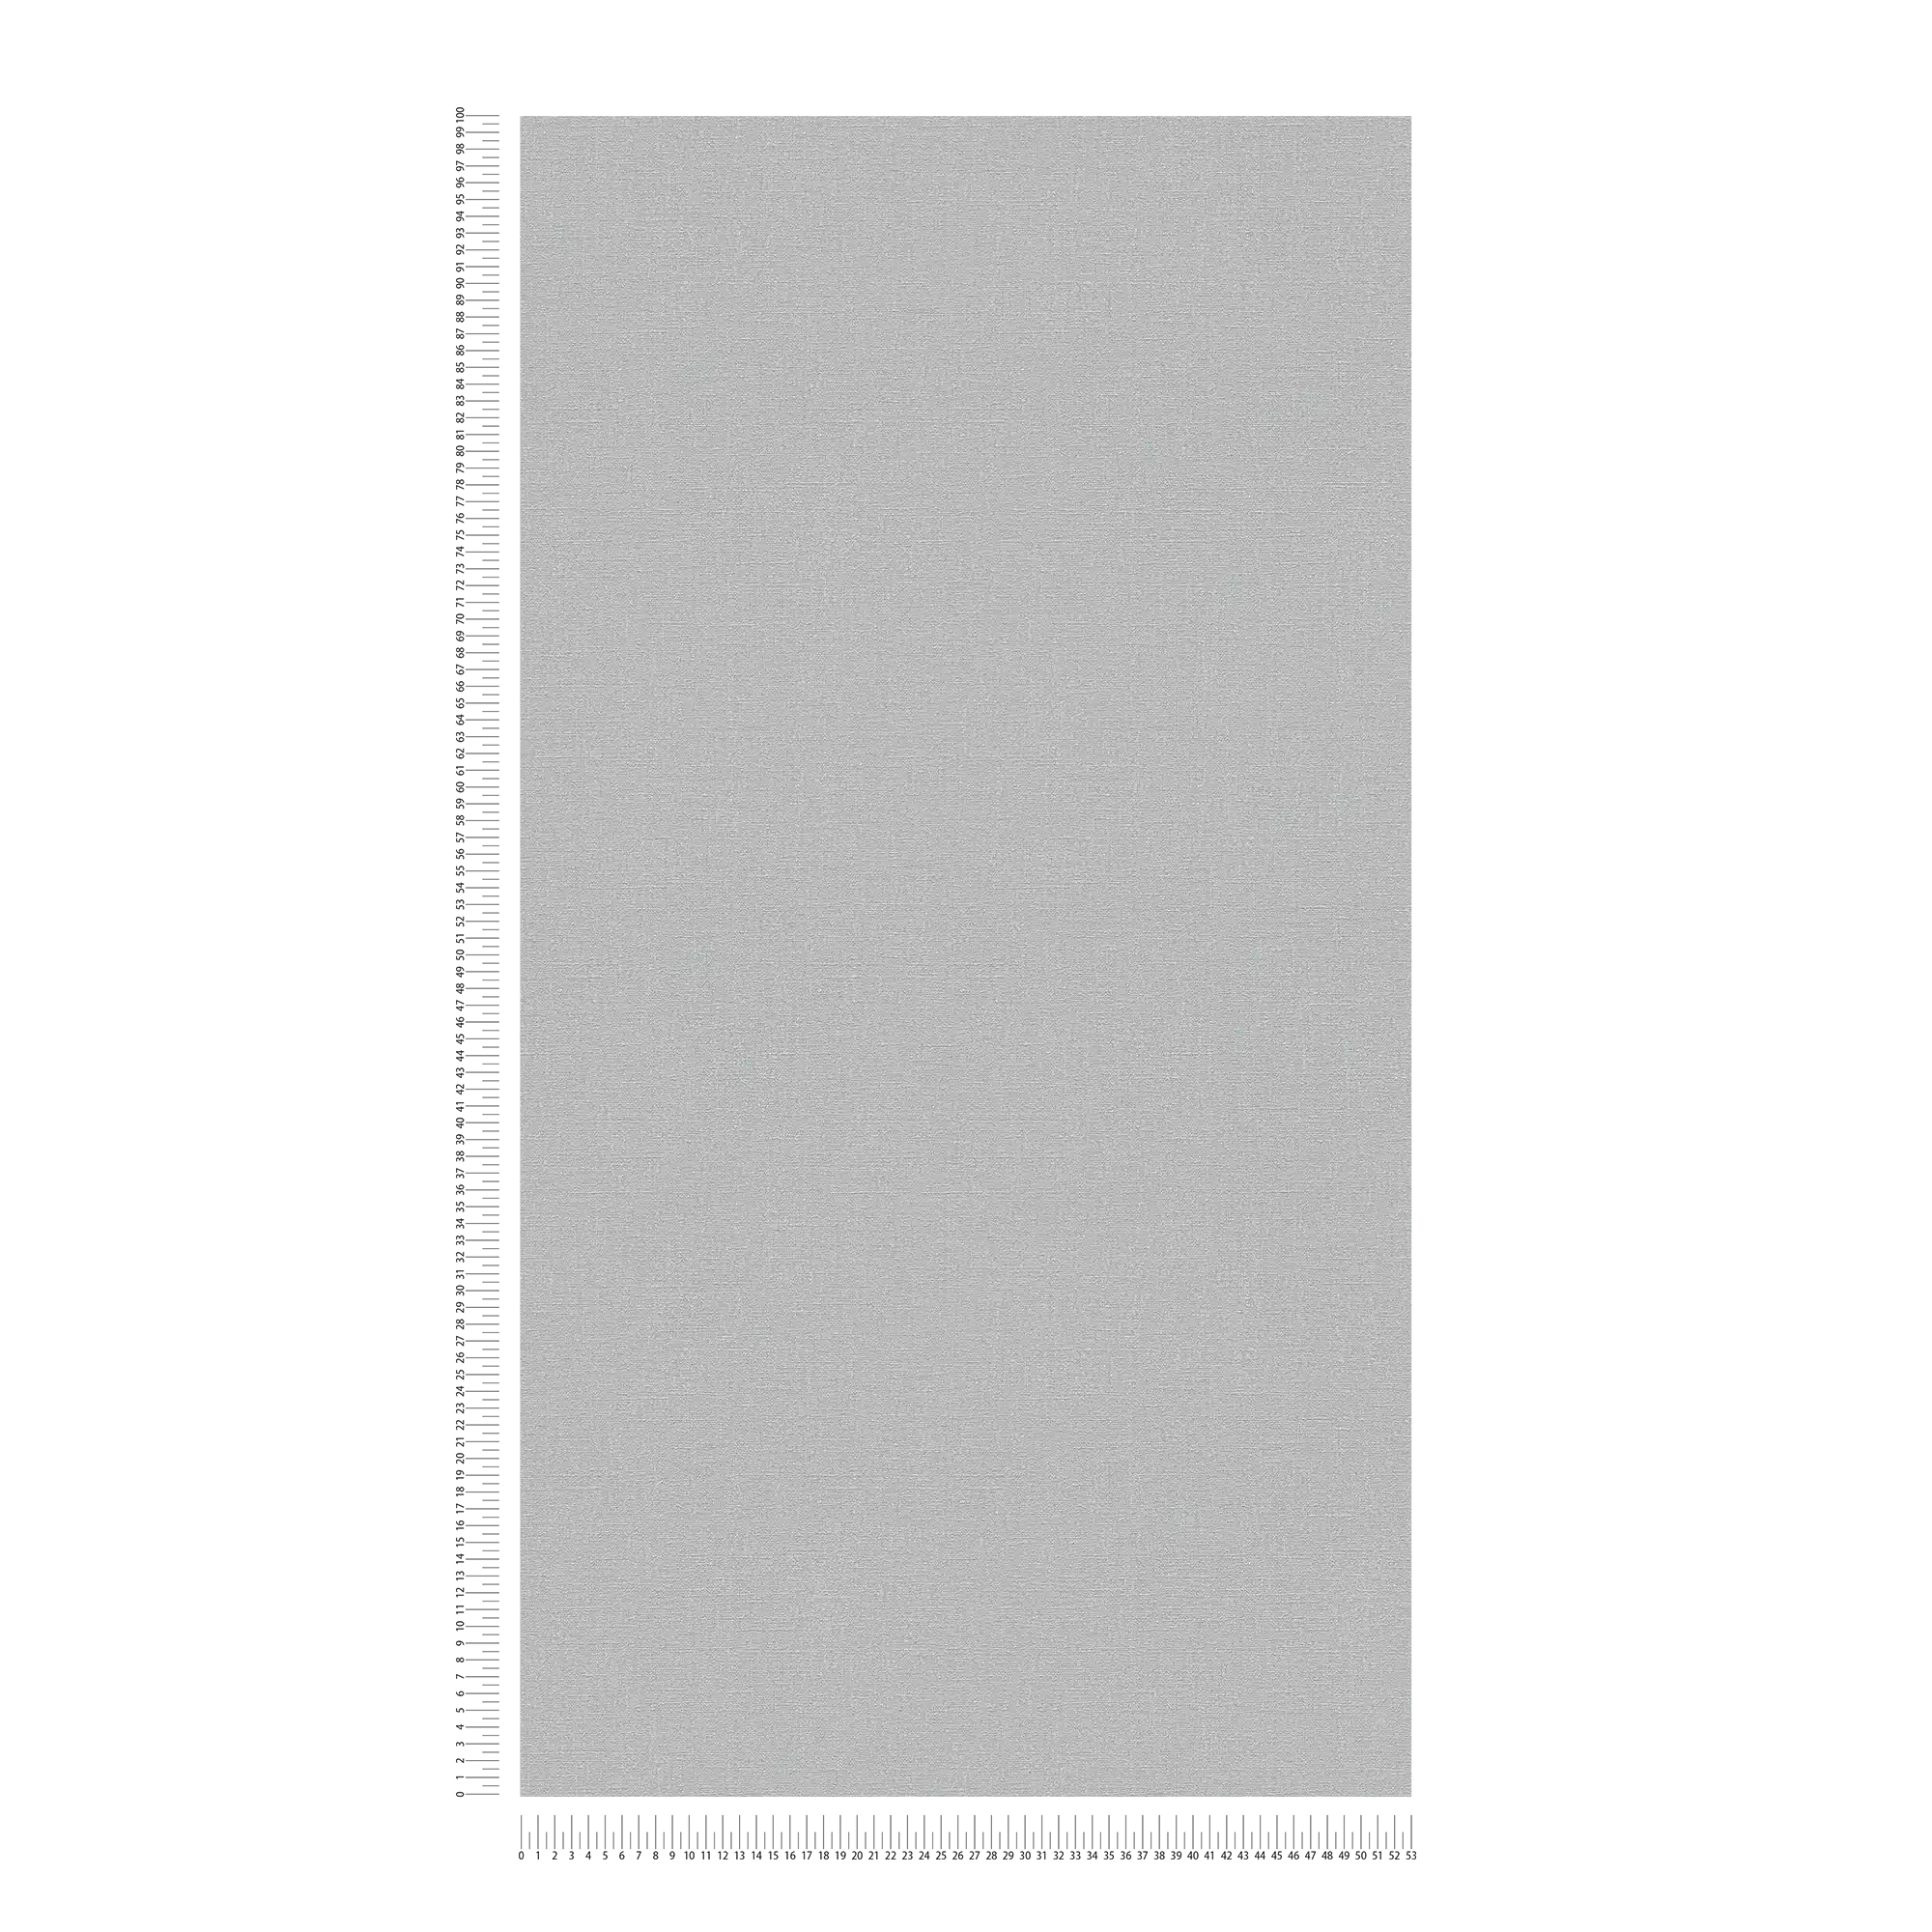             Papier peint gris uni & mat avec motifs structurés
        